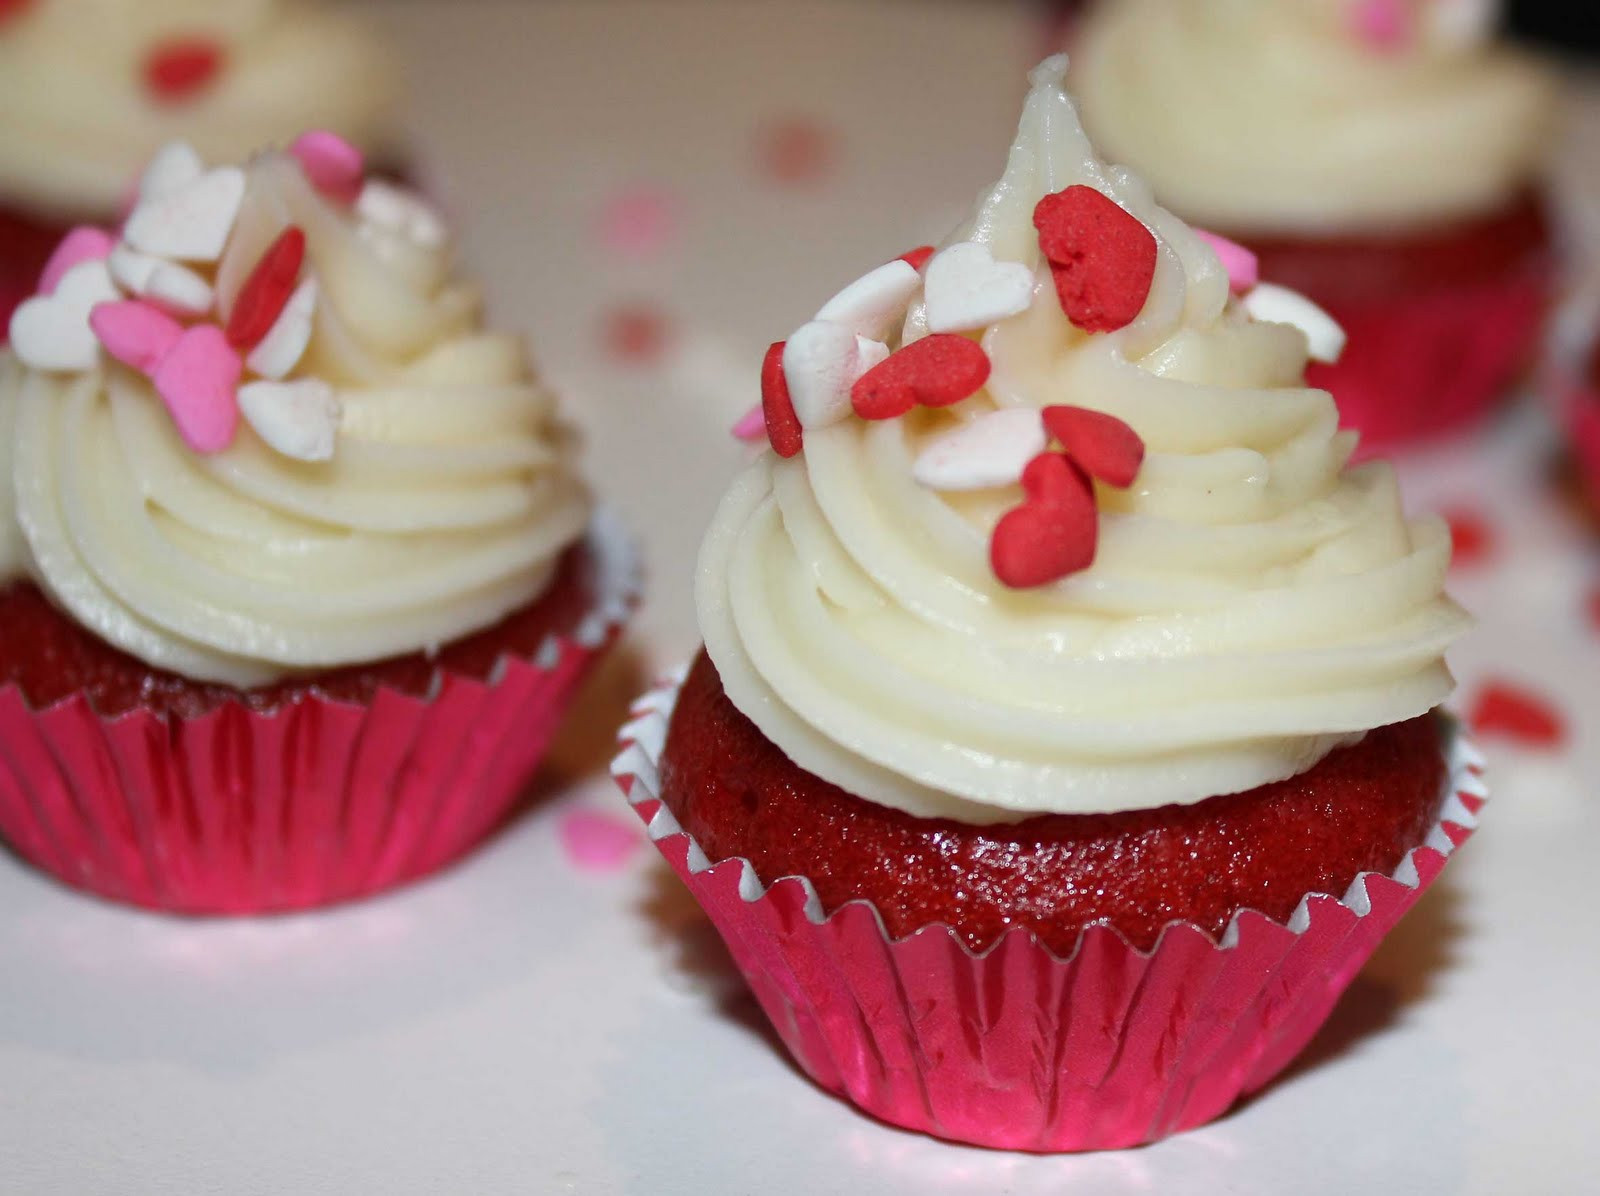 Paula Deen Red Velvet Cake
 Caramels Bonbons et Chocolats Paula Deen s red velvet